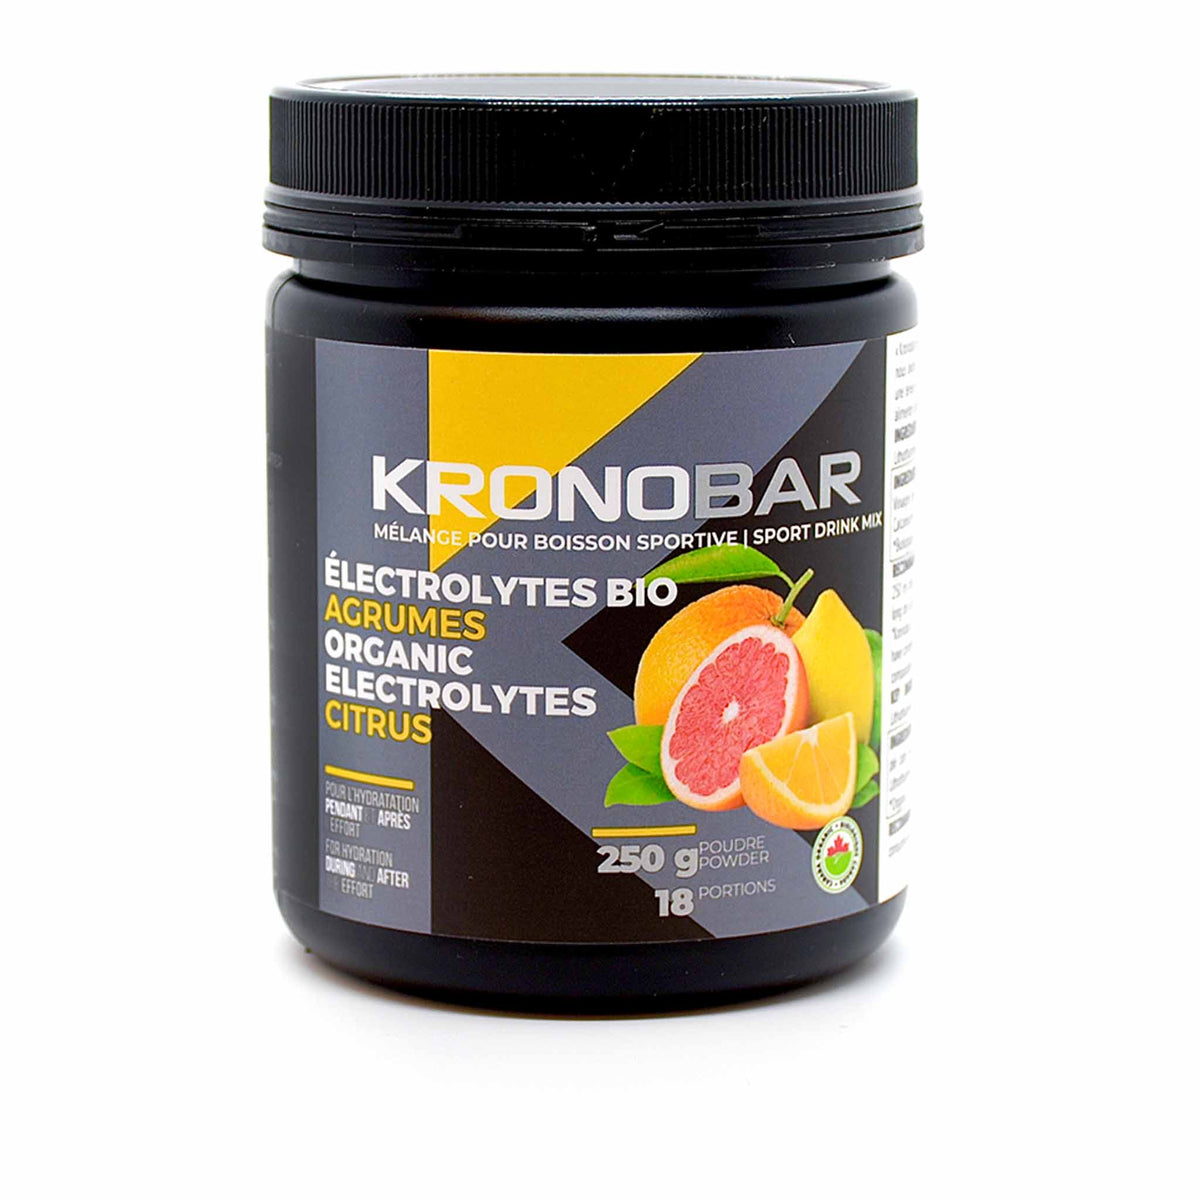 Kronobar Électrolytes Bio mélange pour boisson sportive - Agrumes